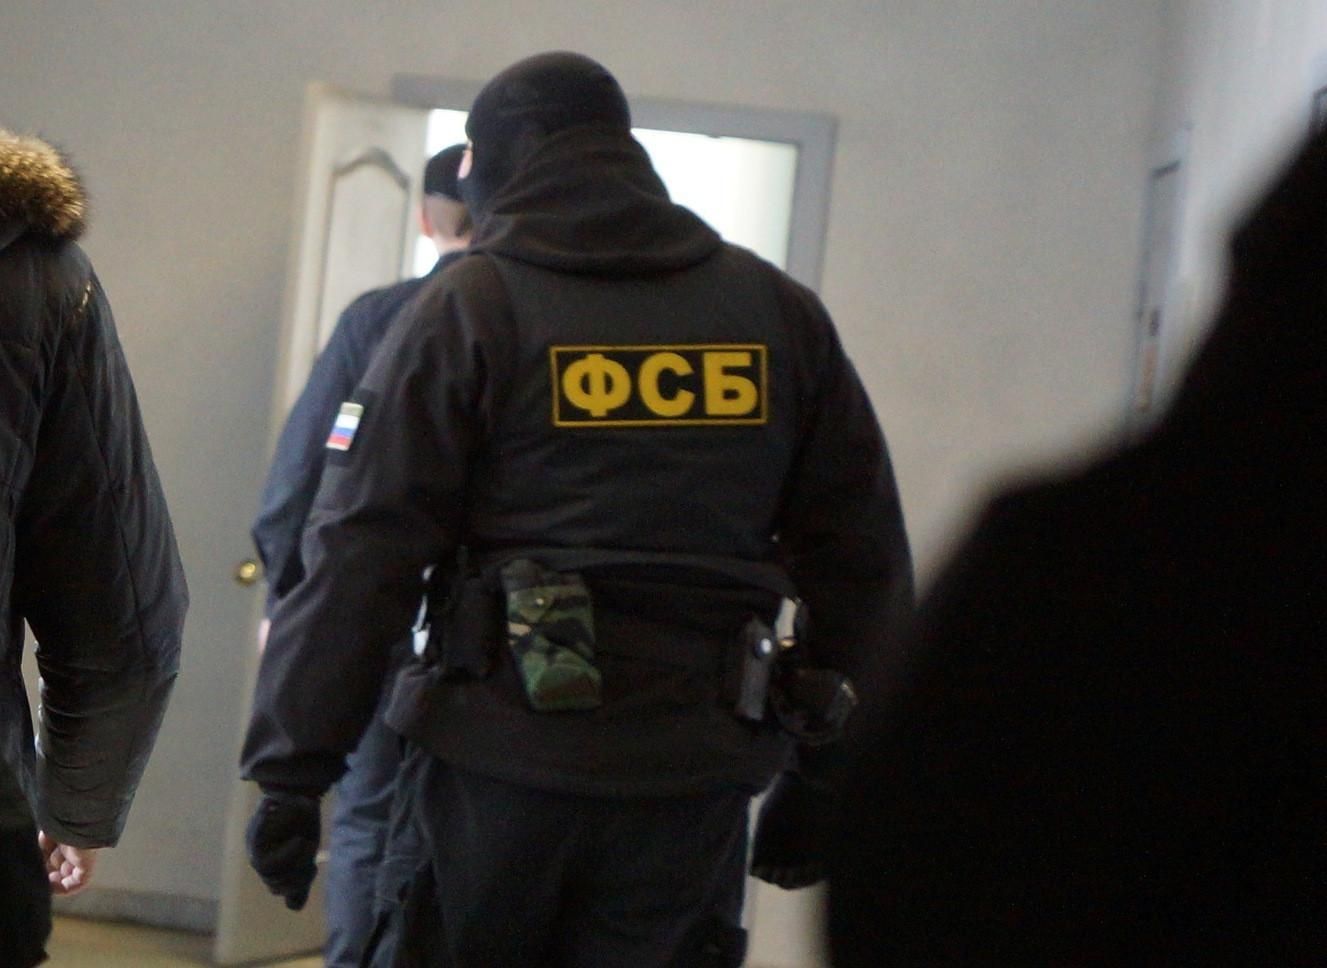 ФСБ России задержала двух крымских татар по подозрению в участии в "Хизб ут-Тахрир аль-Ислами"